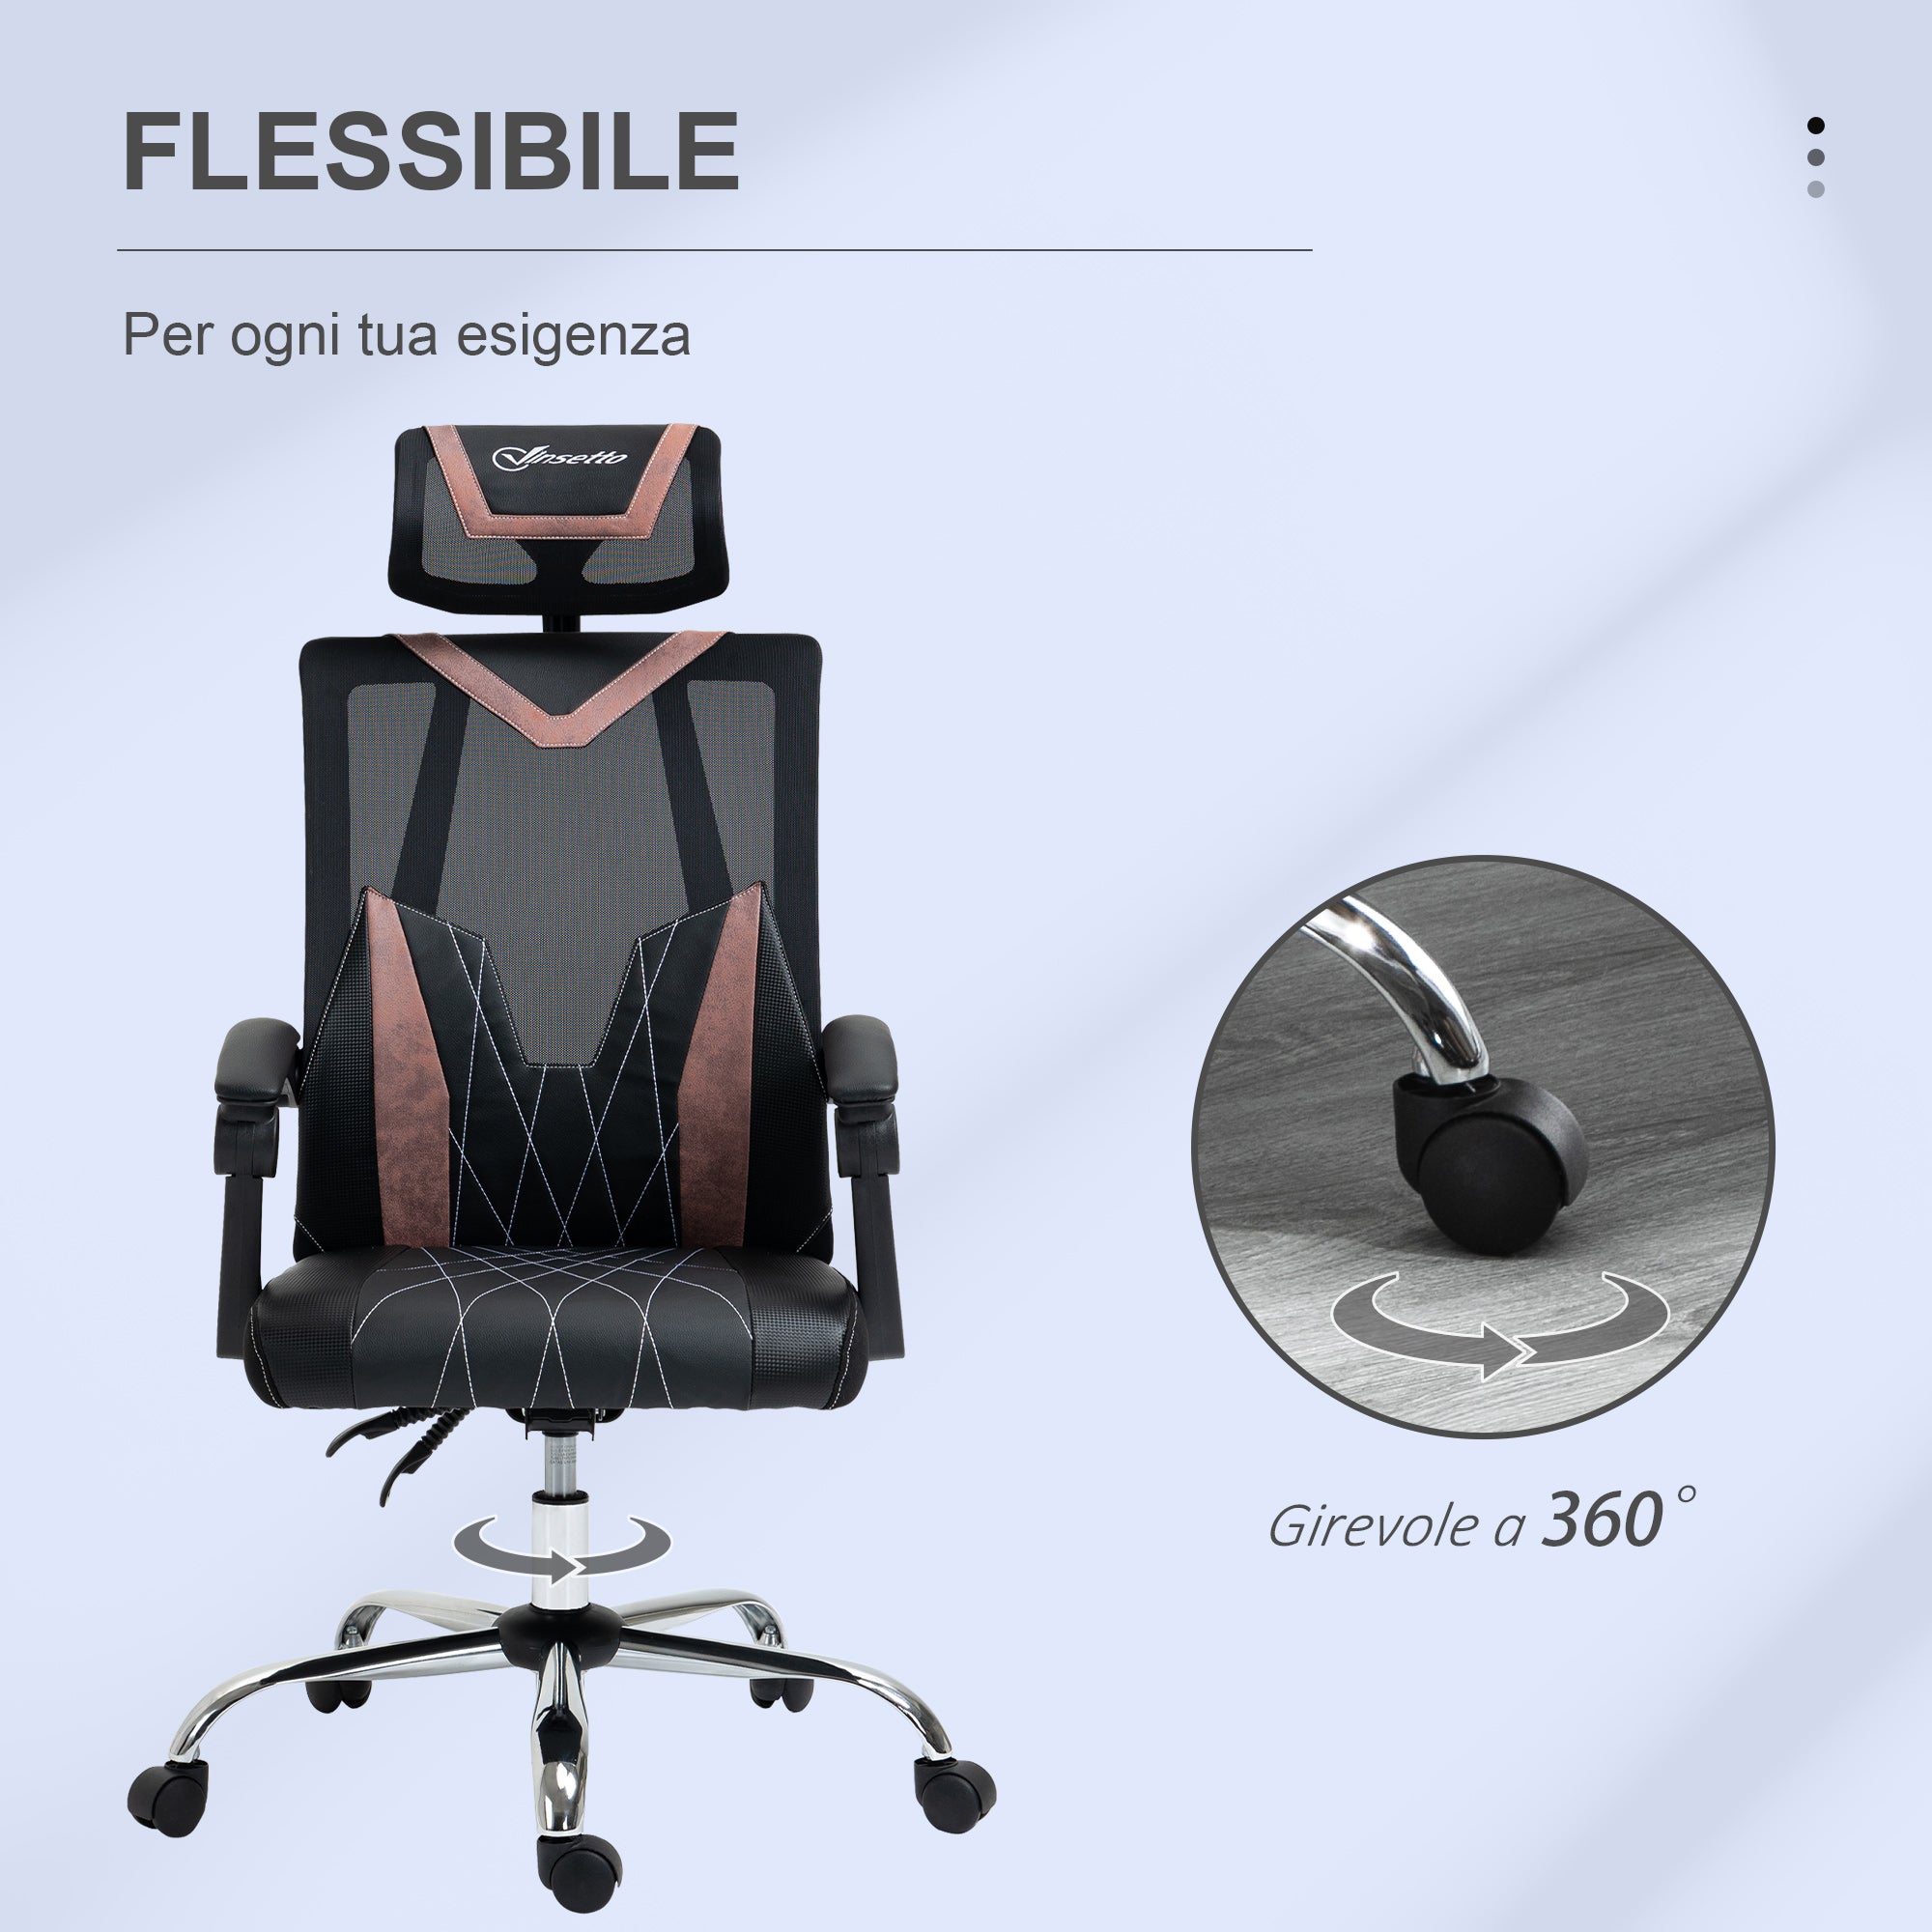 Supporto lombare per ufficio - Komfort Chair